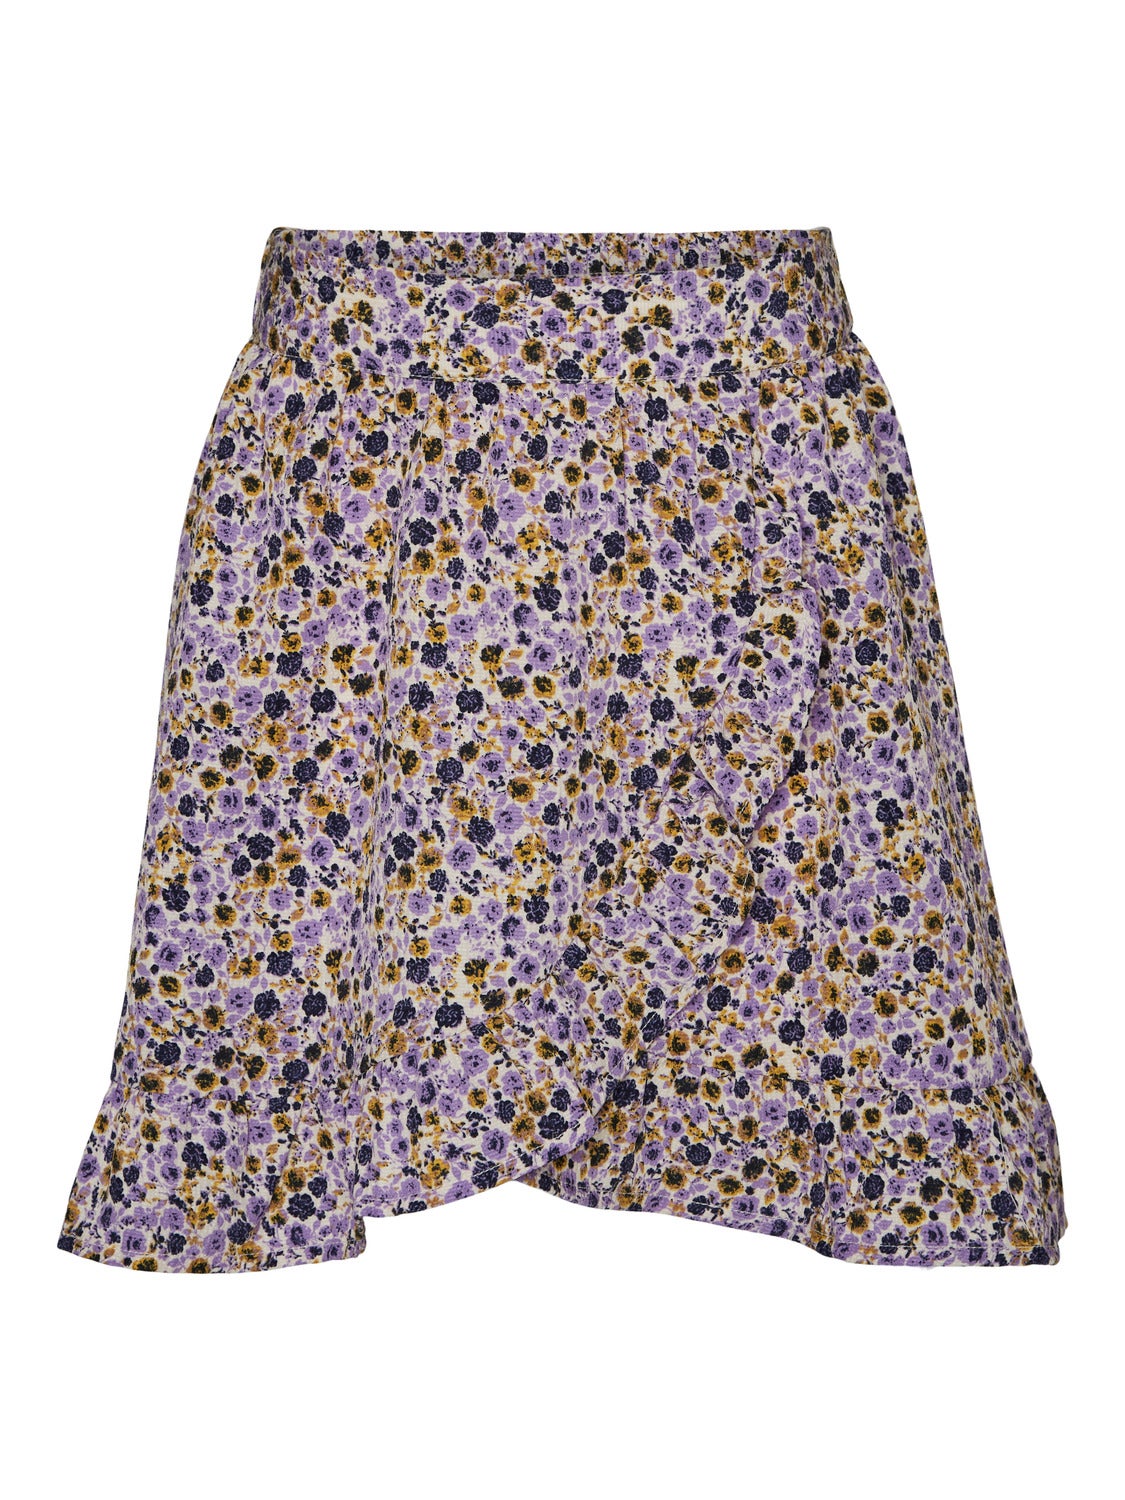 VMELSA Short Skirt